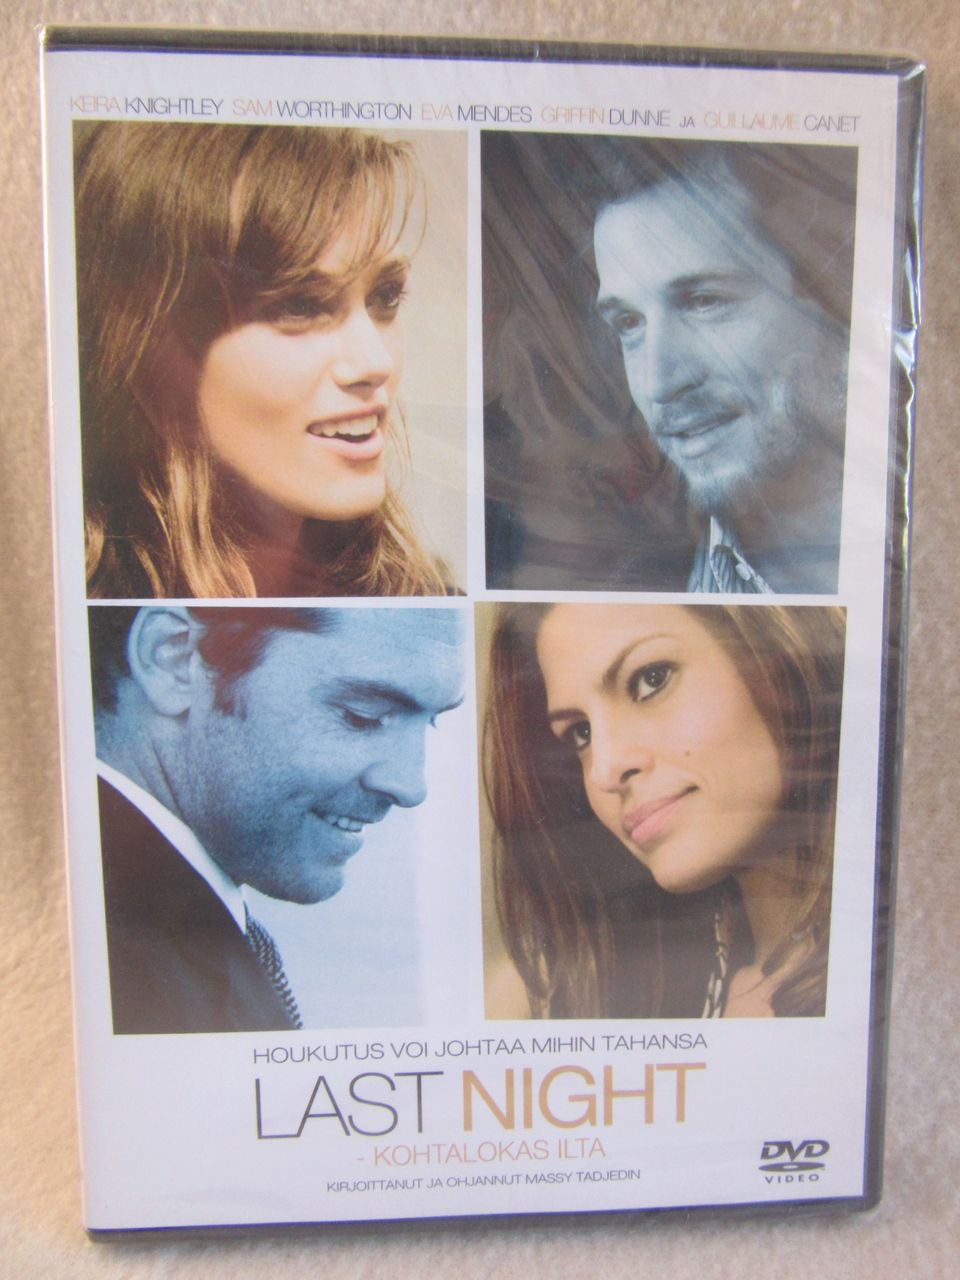 Last Night kohtalokas ilta dvd uusi